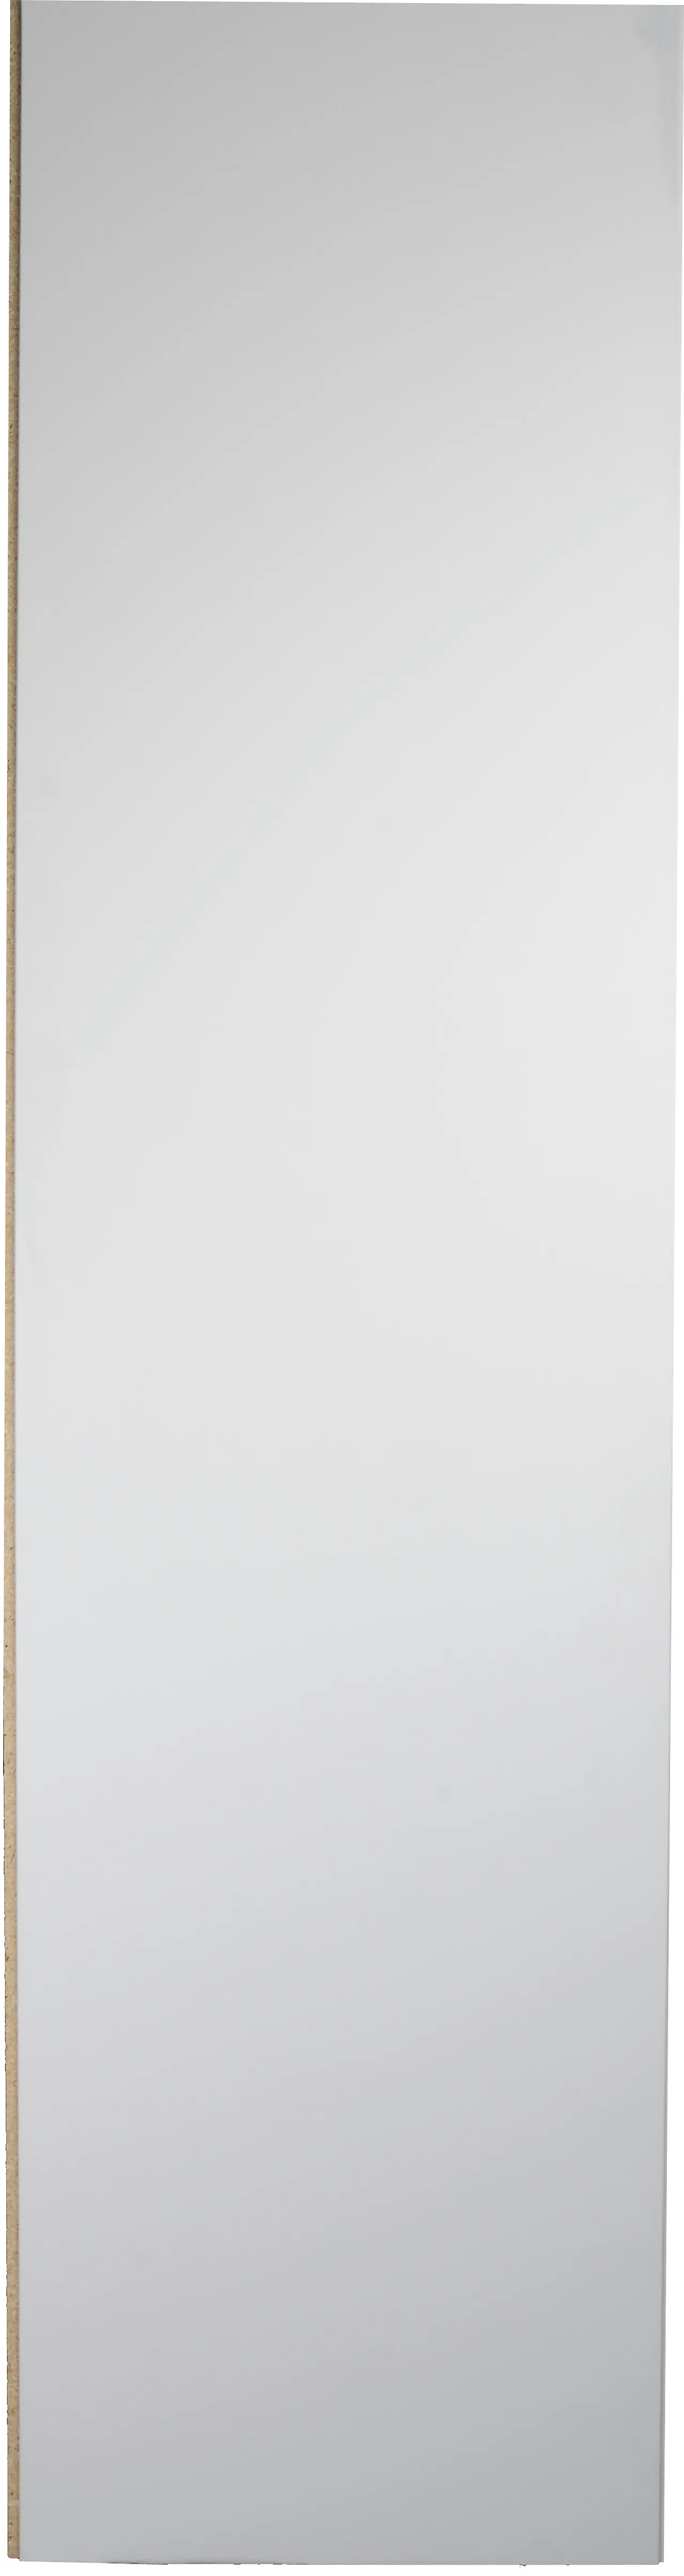 Sponplate vegg 12x620x2390 mm foliert hvit not og fjær 2 sider null - null - 2